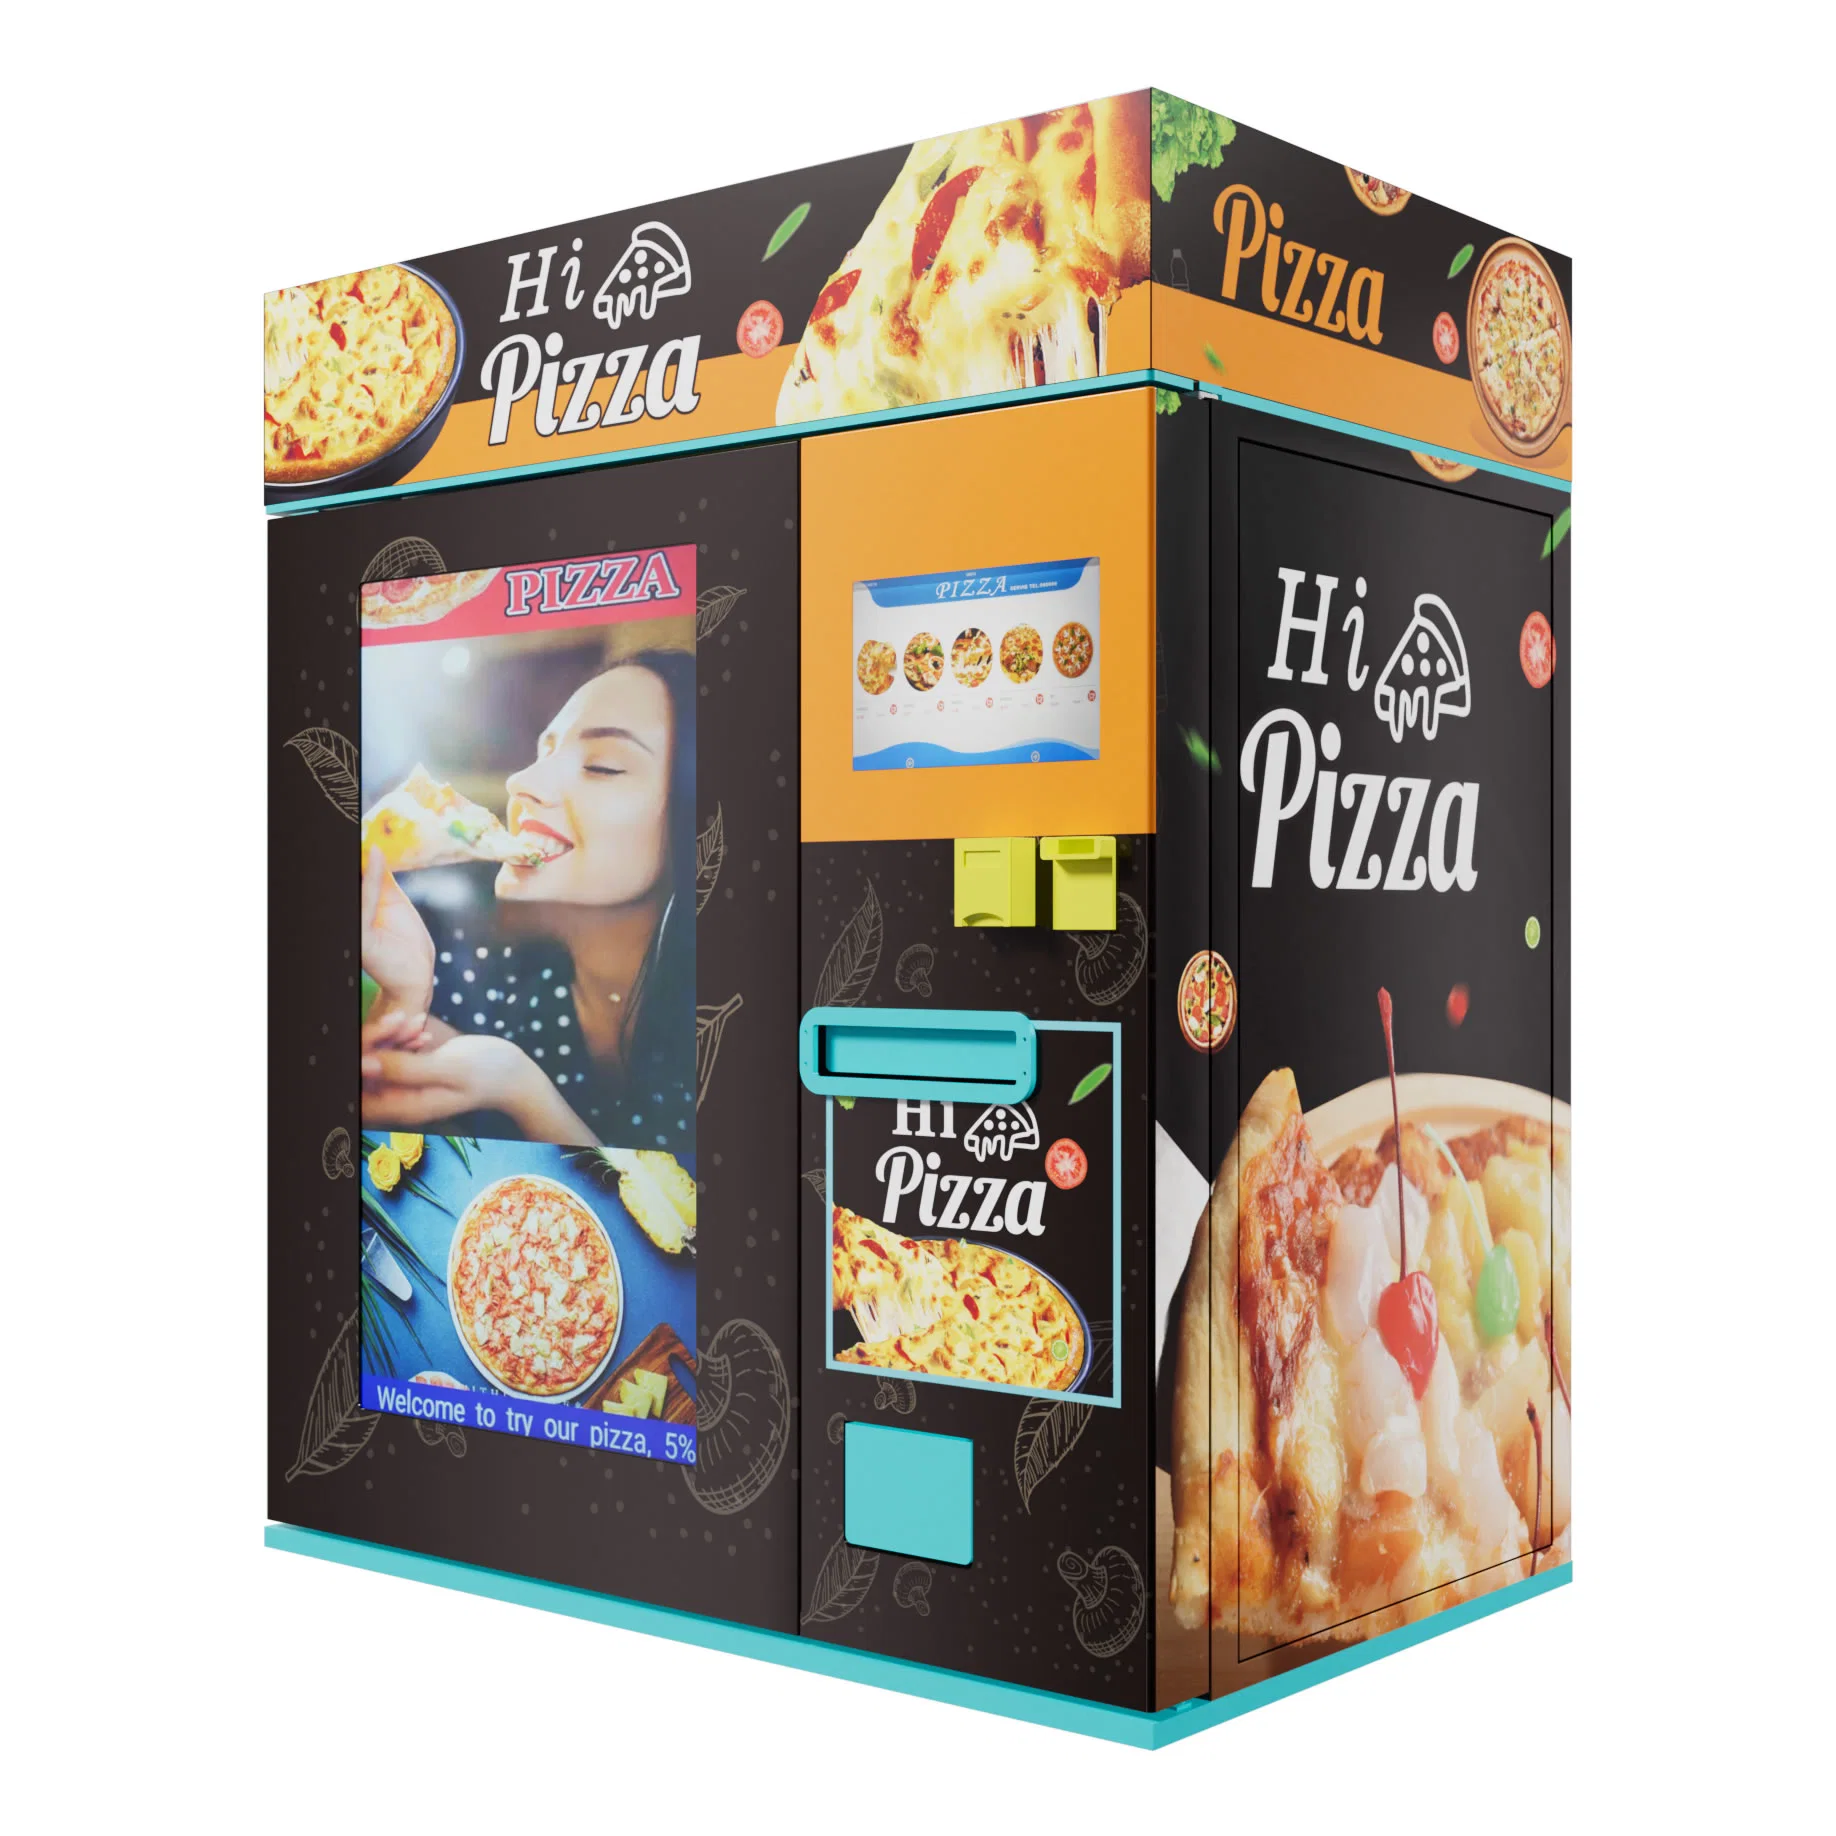 Outdoor-Business Self-Service Fast Food Making Machine Vollautomatische Pizza Verkaufsautomaten